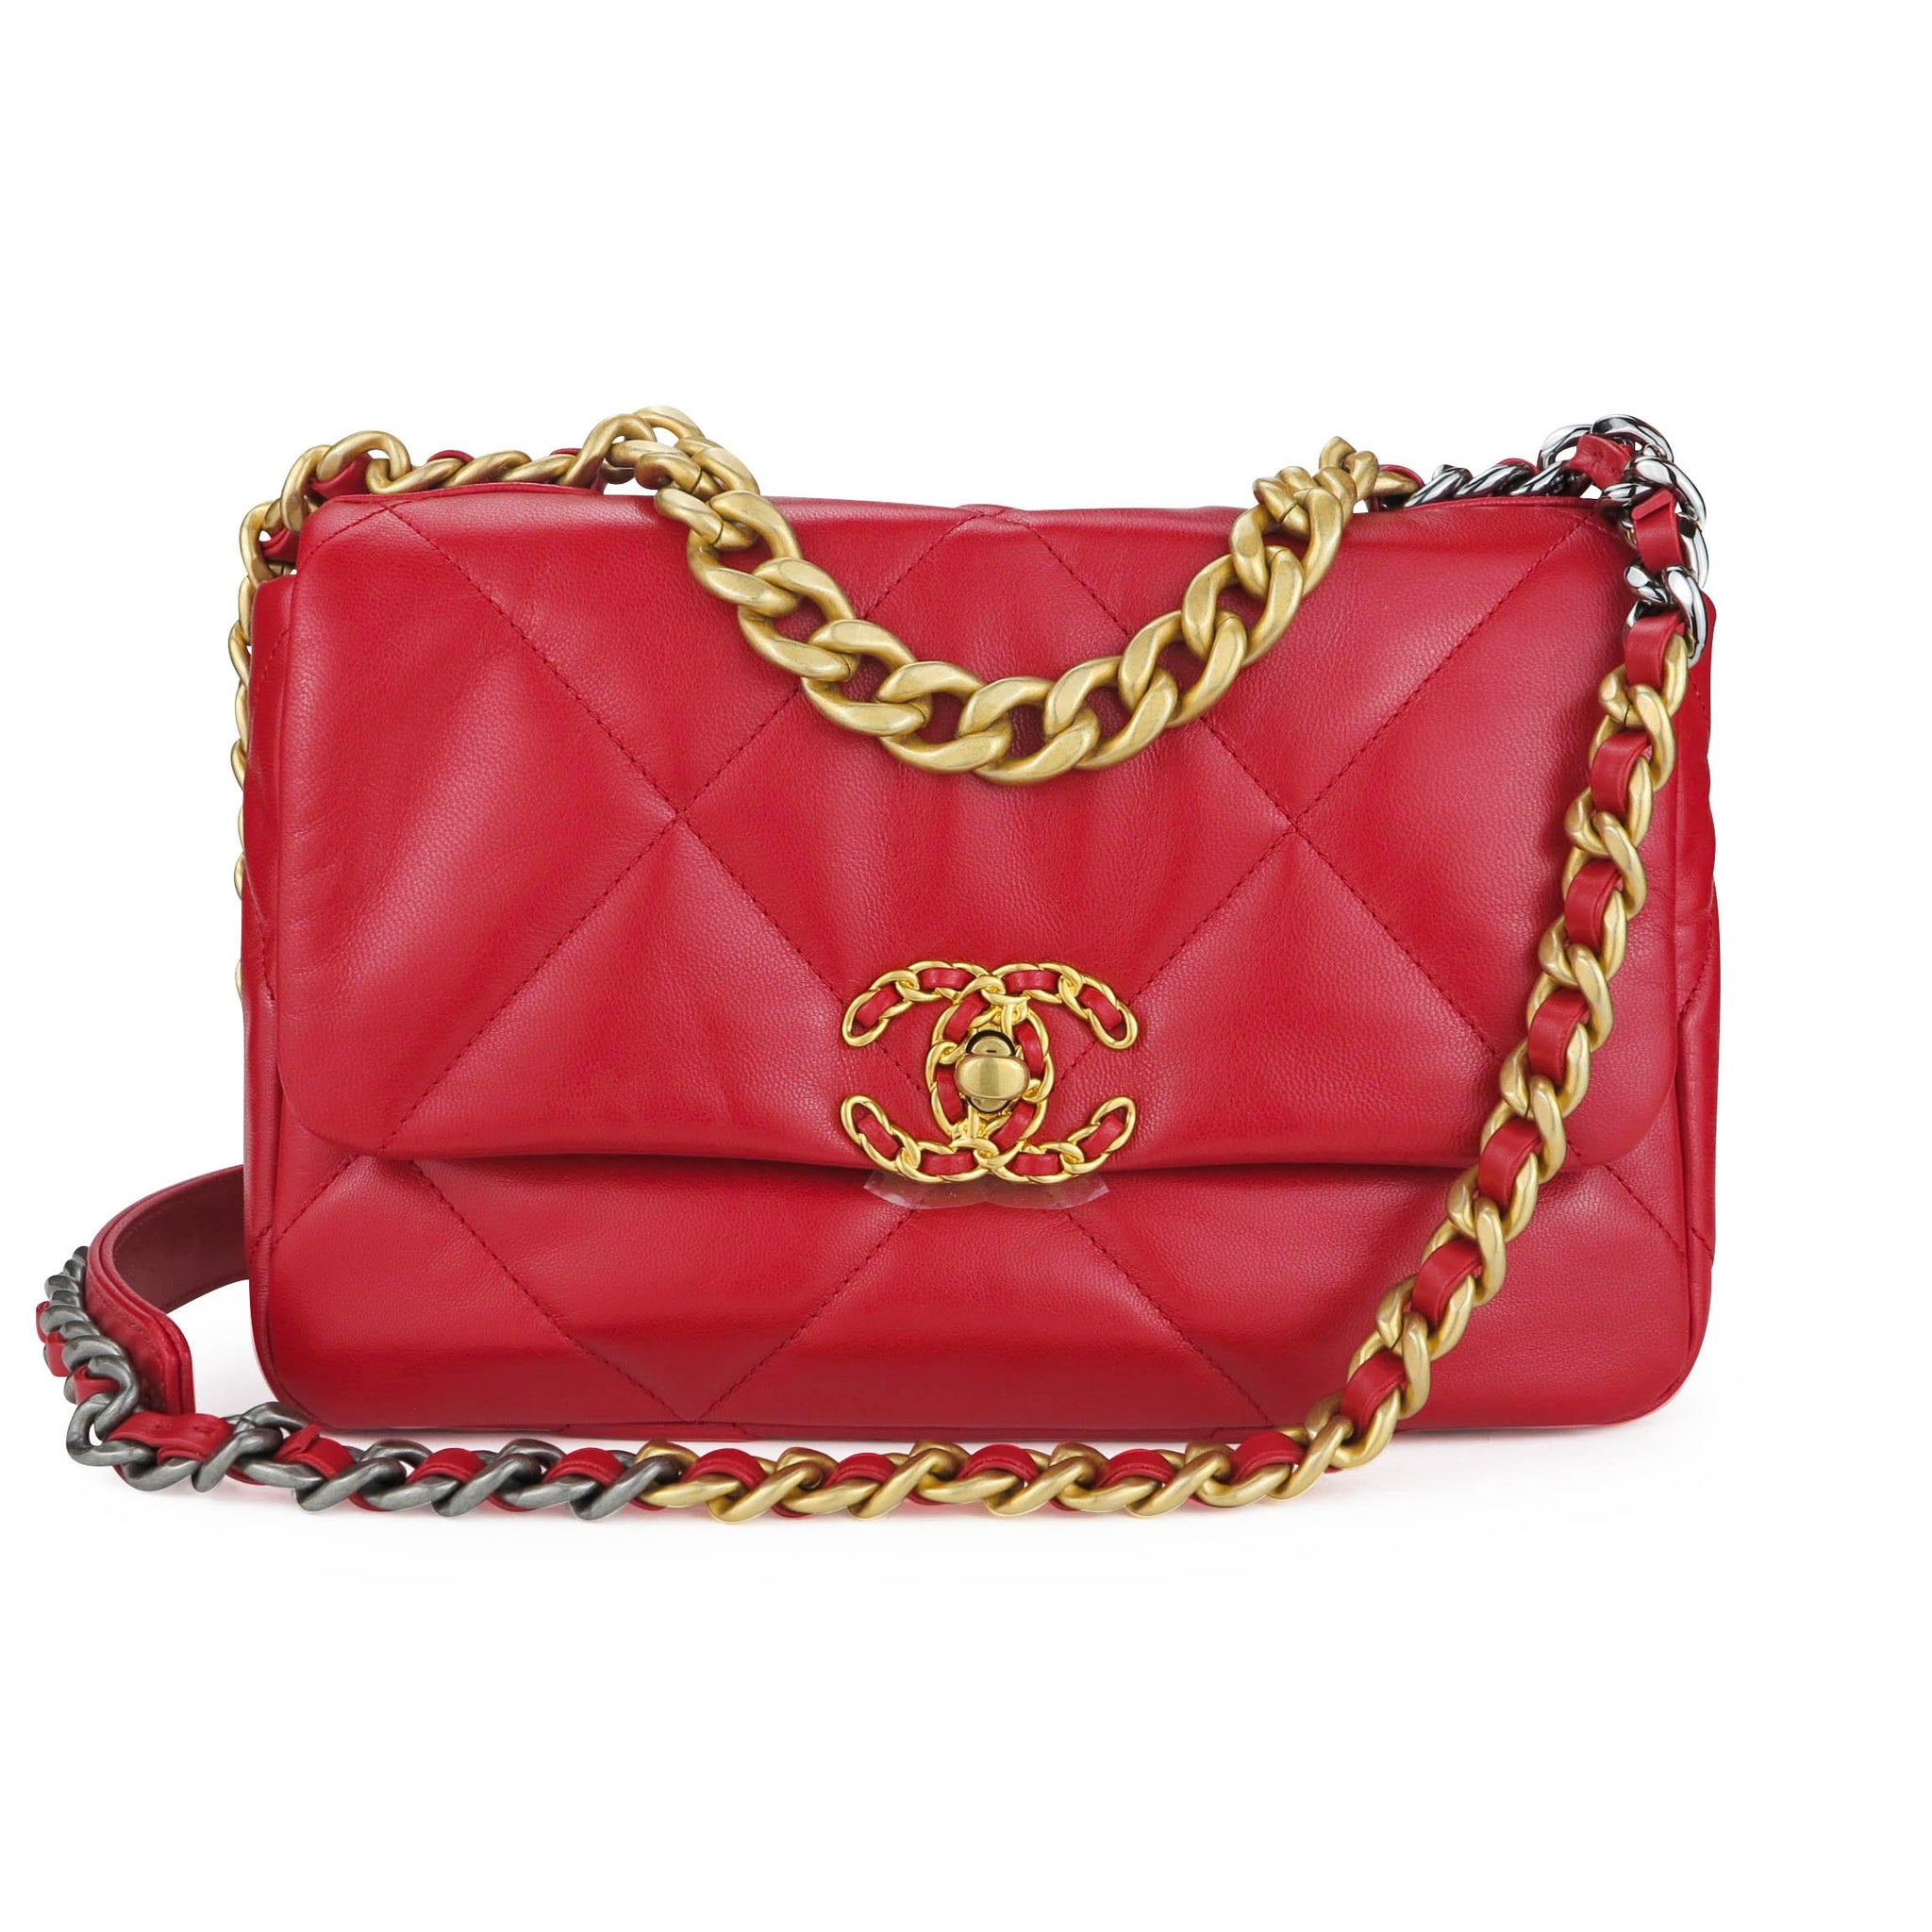 Chanel Chanel 19 Small Flap Bag In Red Goatskin | Dearluxe